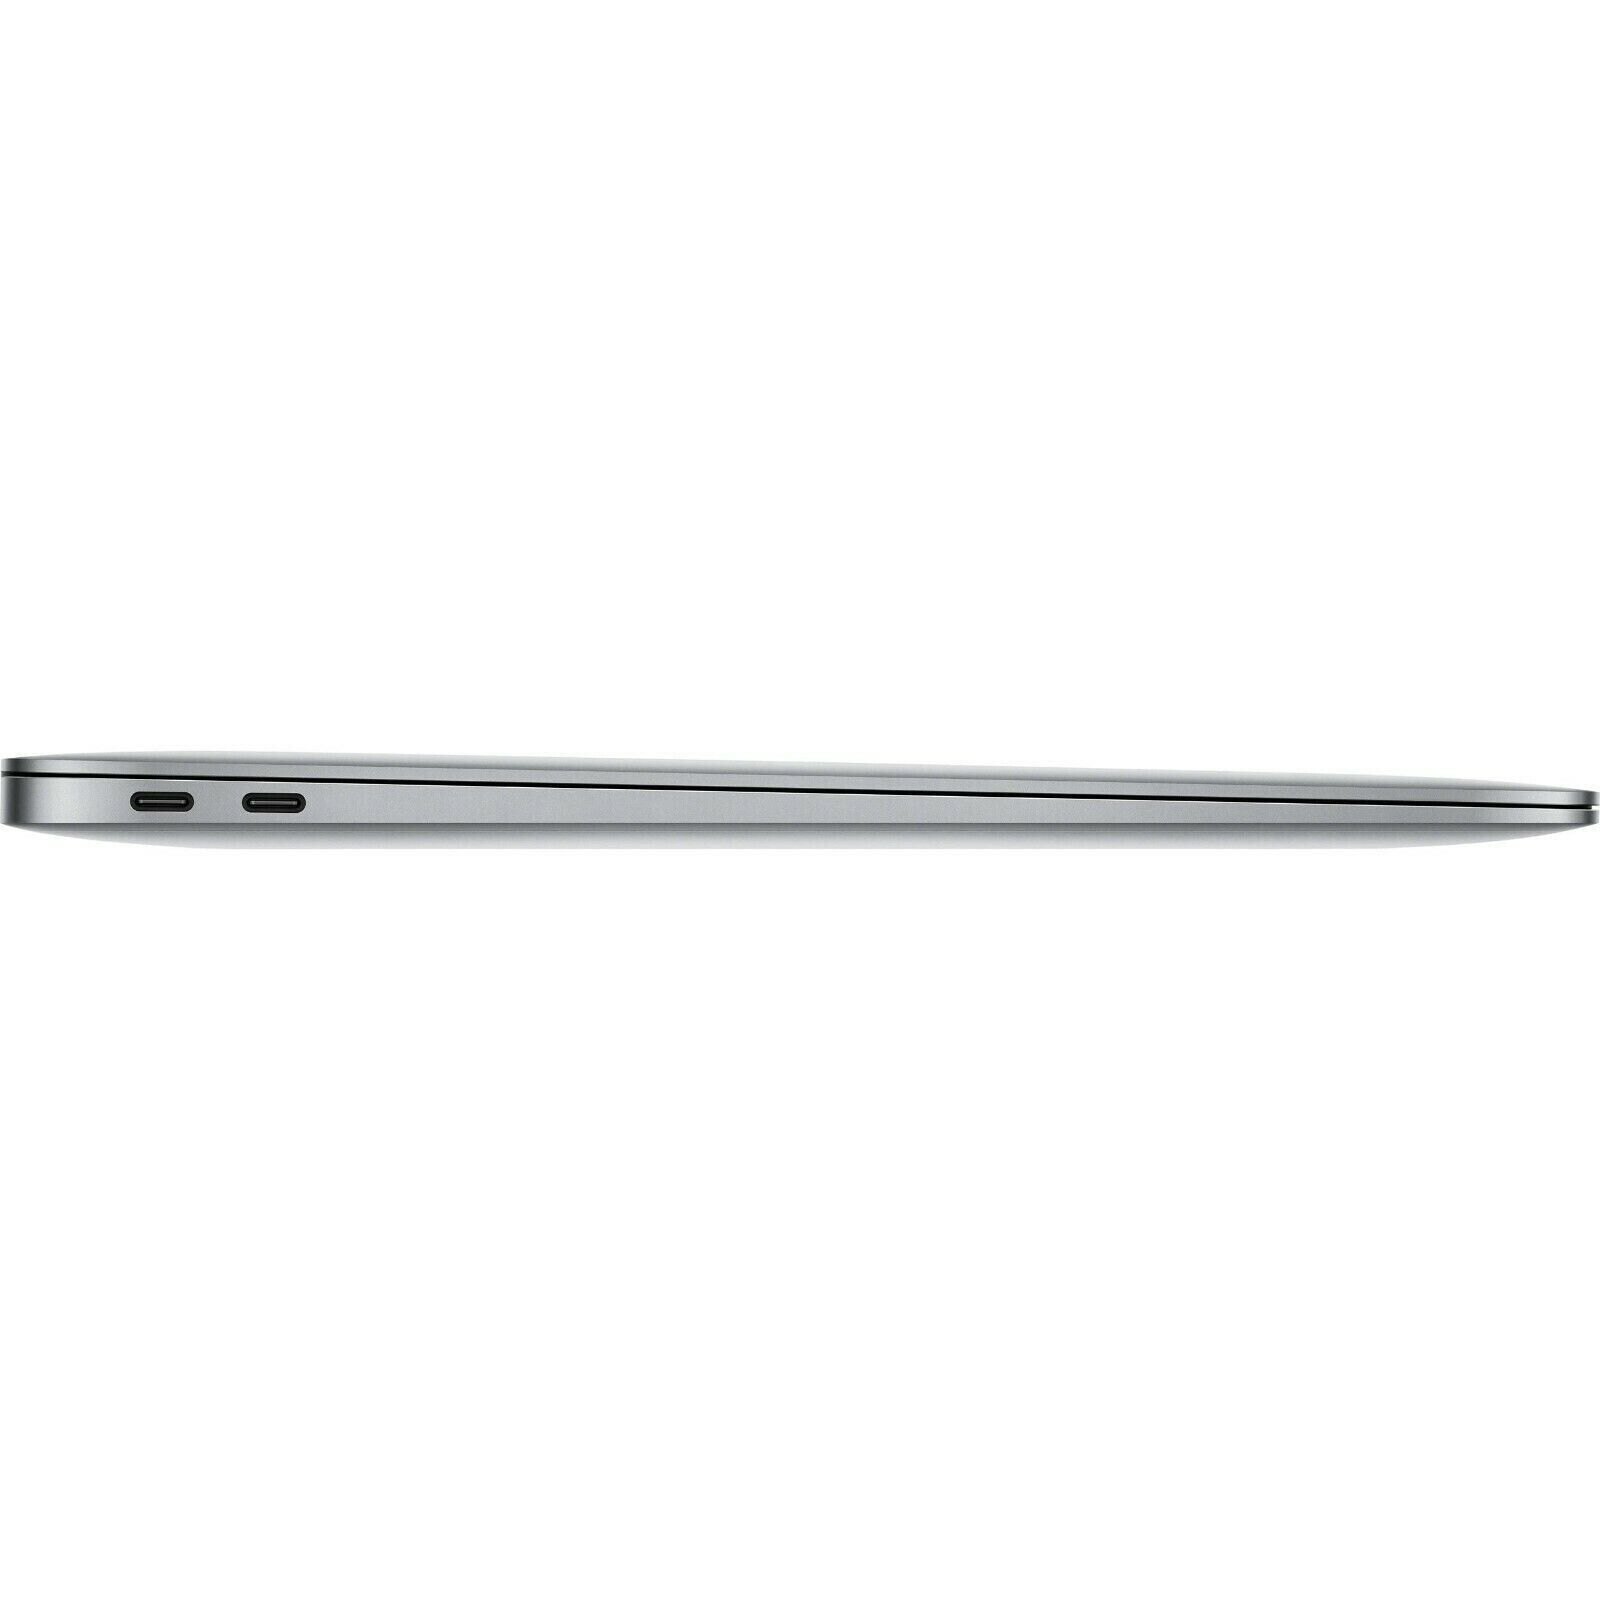 Apple MacBook Air RETINA 13